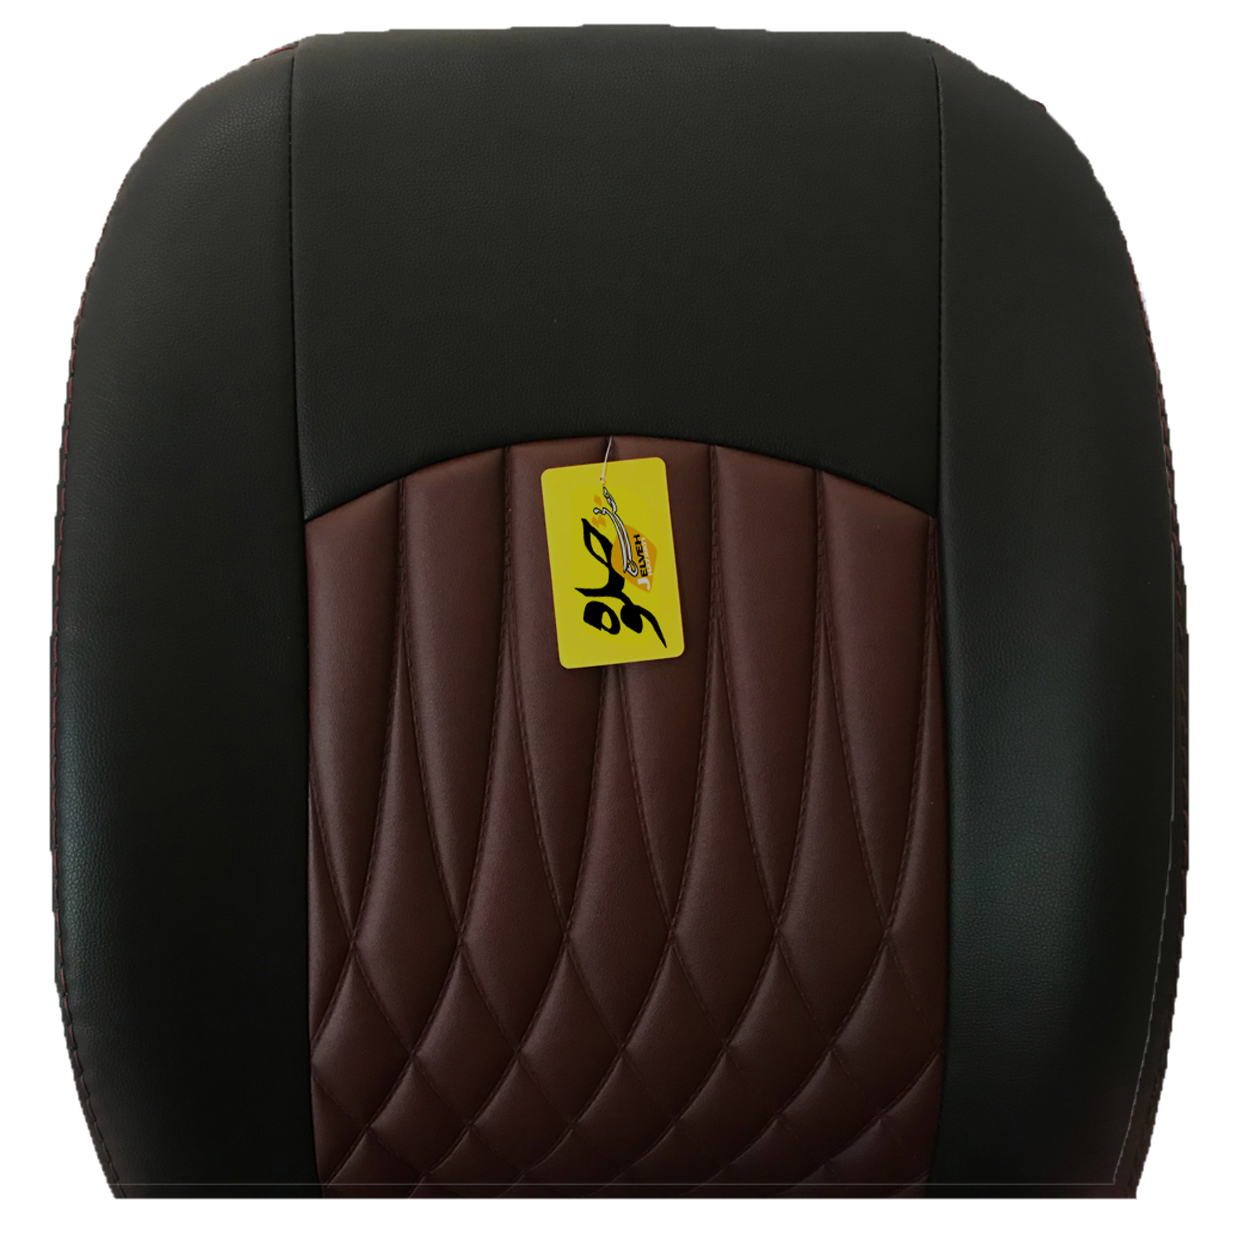 روکش صندلی خودرو جلوه مدل BG14N مناسب برای پژو پارس